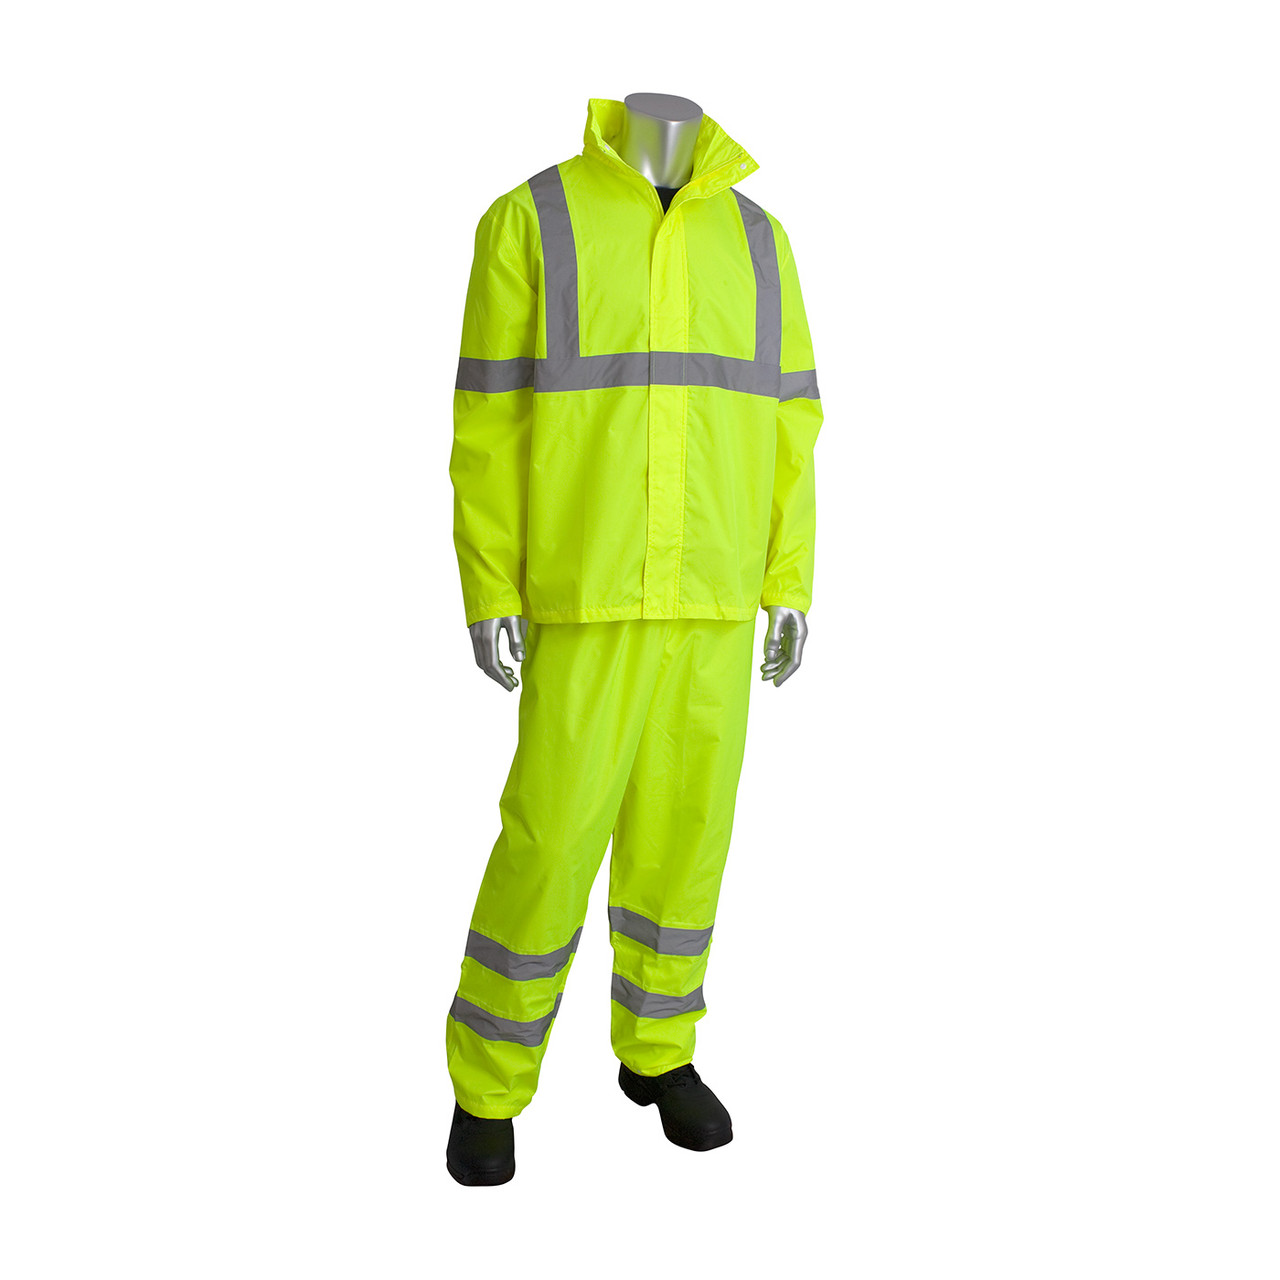 PIP Hi-Visibility 2-Piece Reflective Rain Suit 353-1000